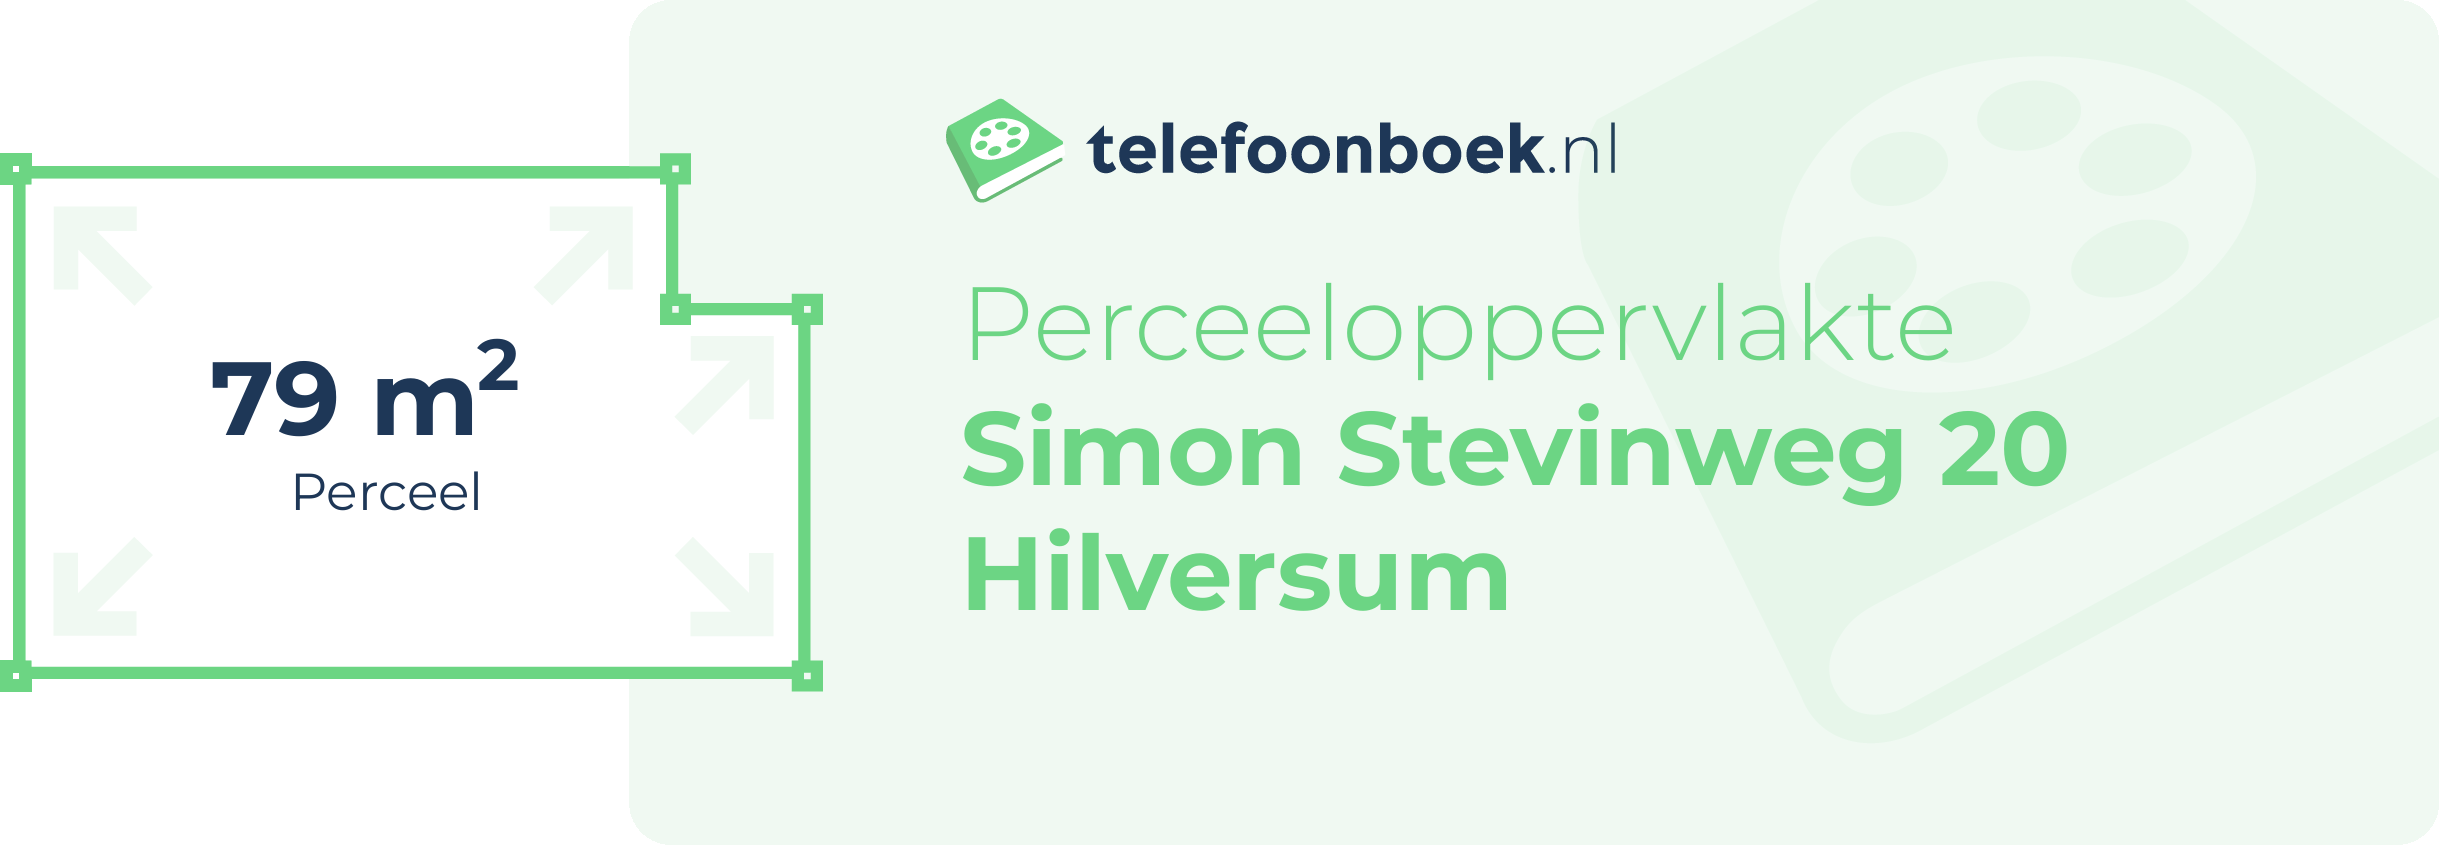 Perceeloppervlakte Simon Stevinweg 20 Hilversum